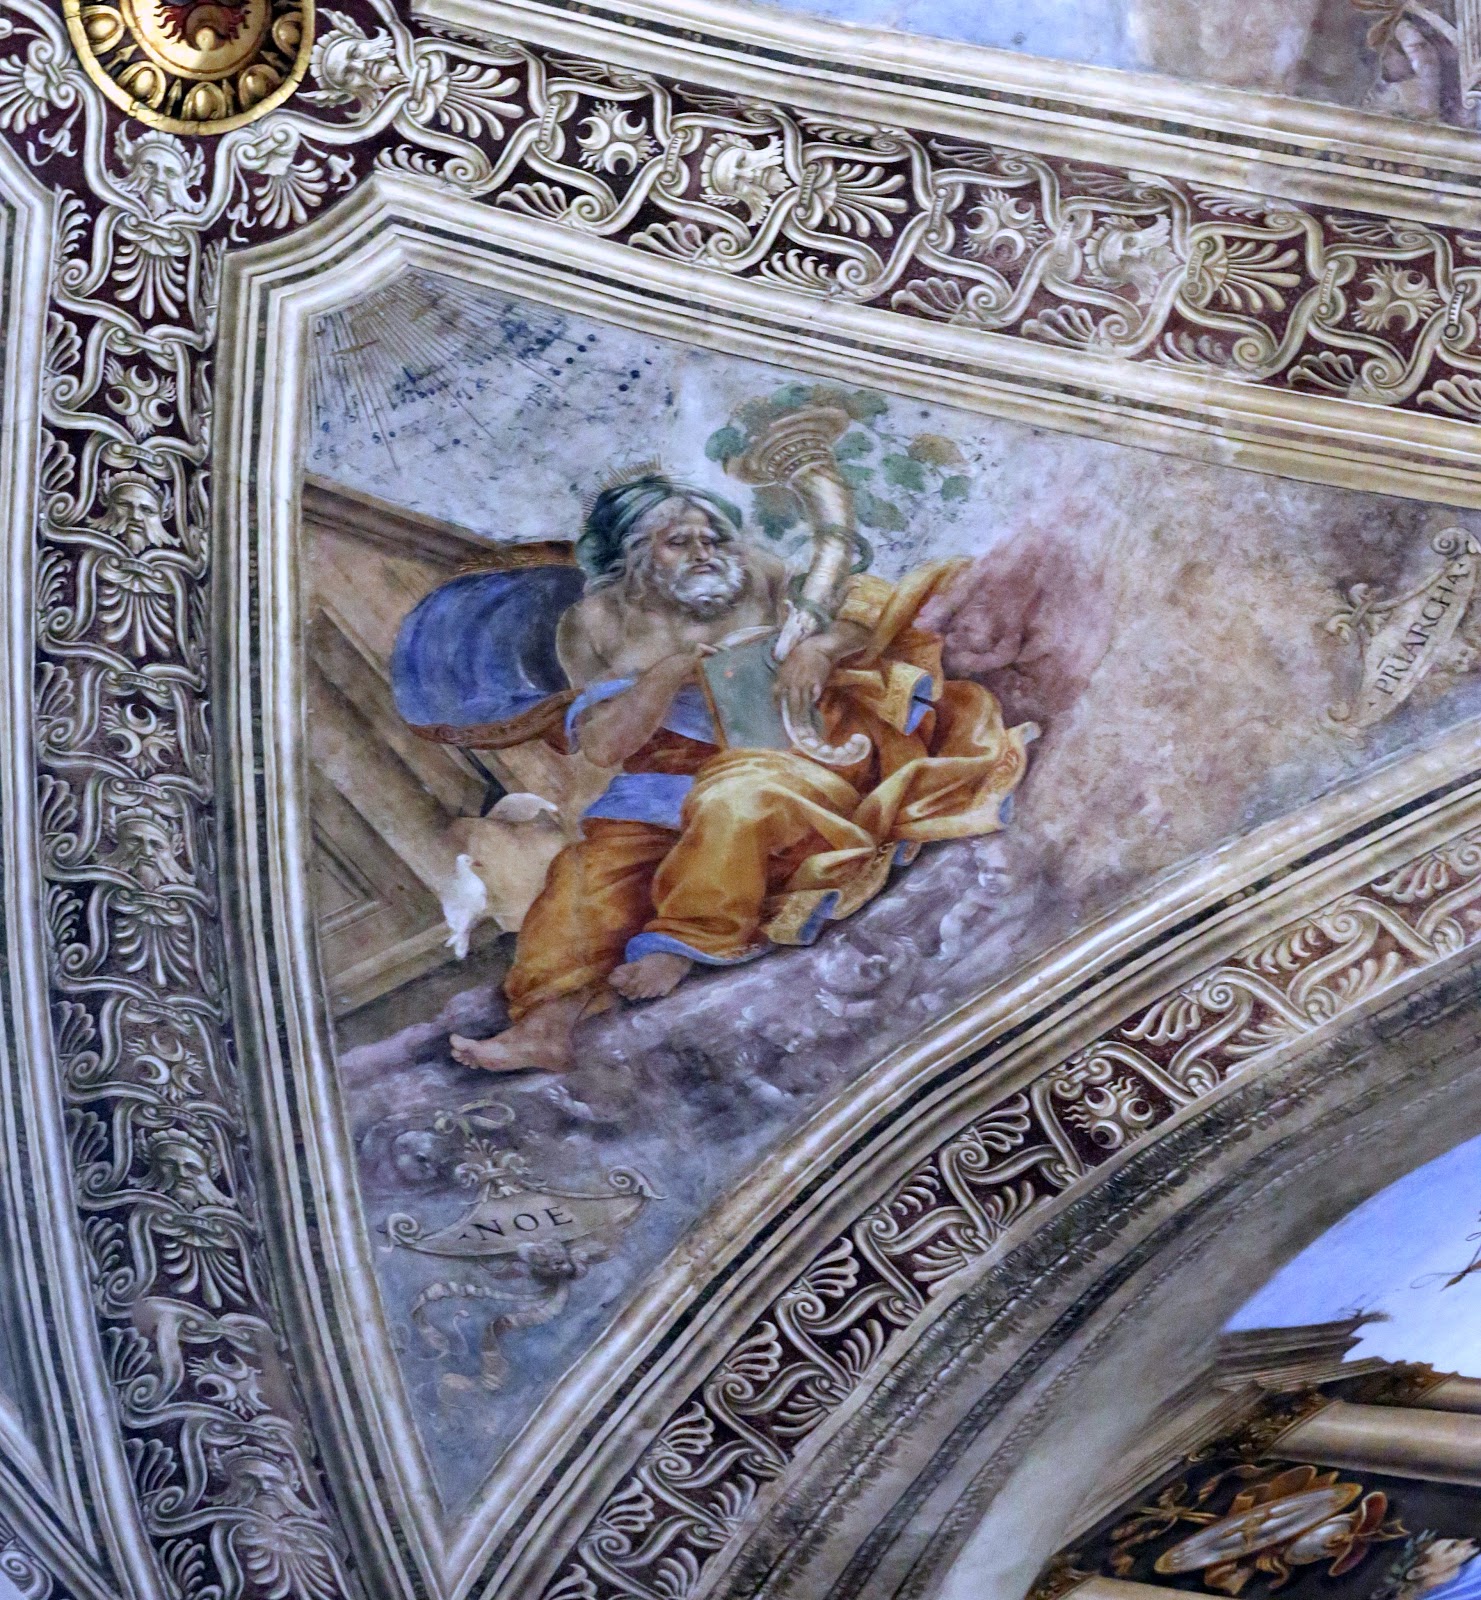 Filippino+Lippi-1457-1504 (21).jpg